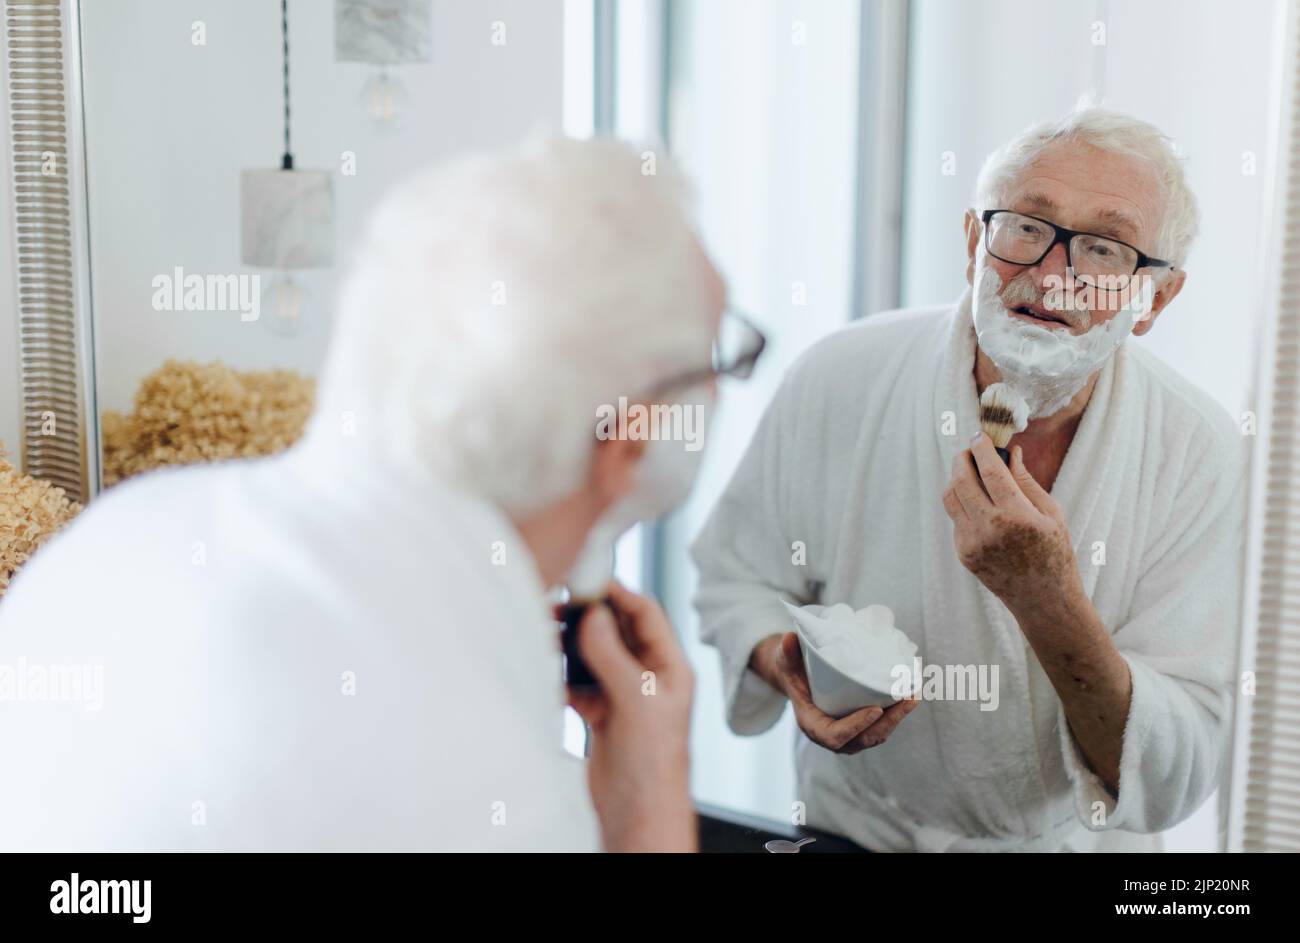 Hombre mayor afeitándose la barba en el baño, mirando al espejo. Concepto de rutina matutina. Foto de stock